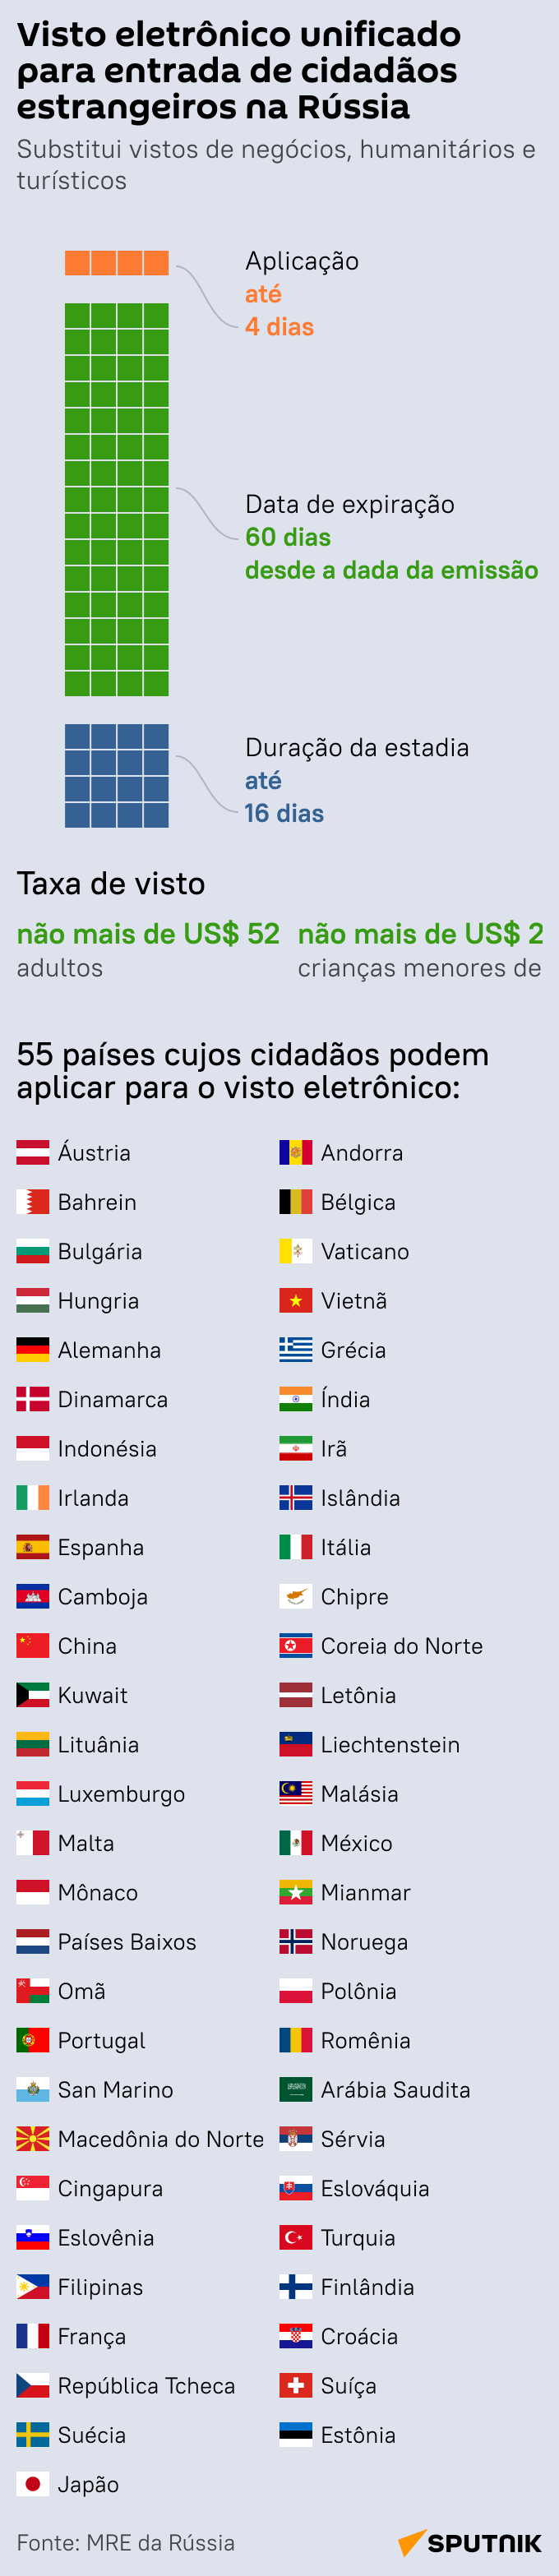 Visto eletrônico russo: cidadãos de quais países podem solicitar? - Sputnik Brasil